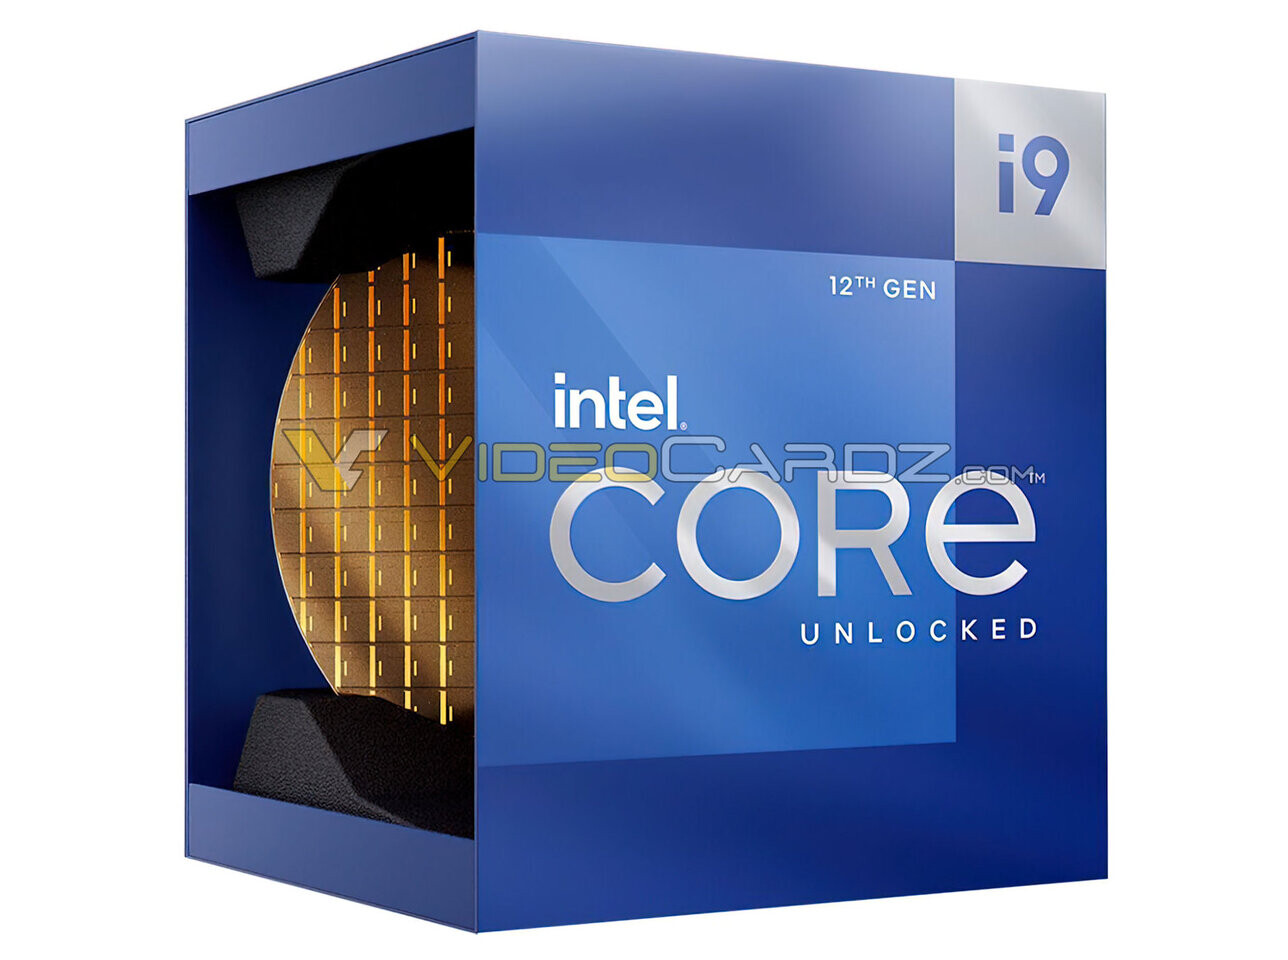 Immagine pubblicata in relazione al seguente contenuto: Gi svelate le confezioni delle CPU Intel Core di dodicesima generazione | Nome immagine: news32527_Intel-Core-12th-Generation-bundle_2.jpg